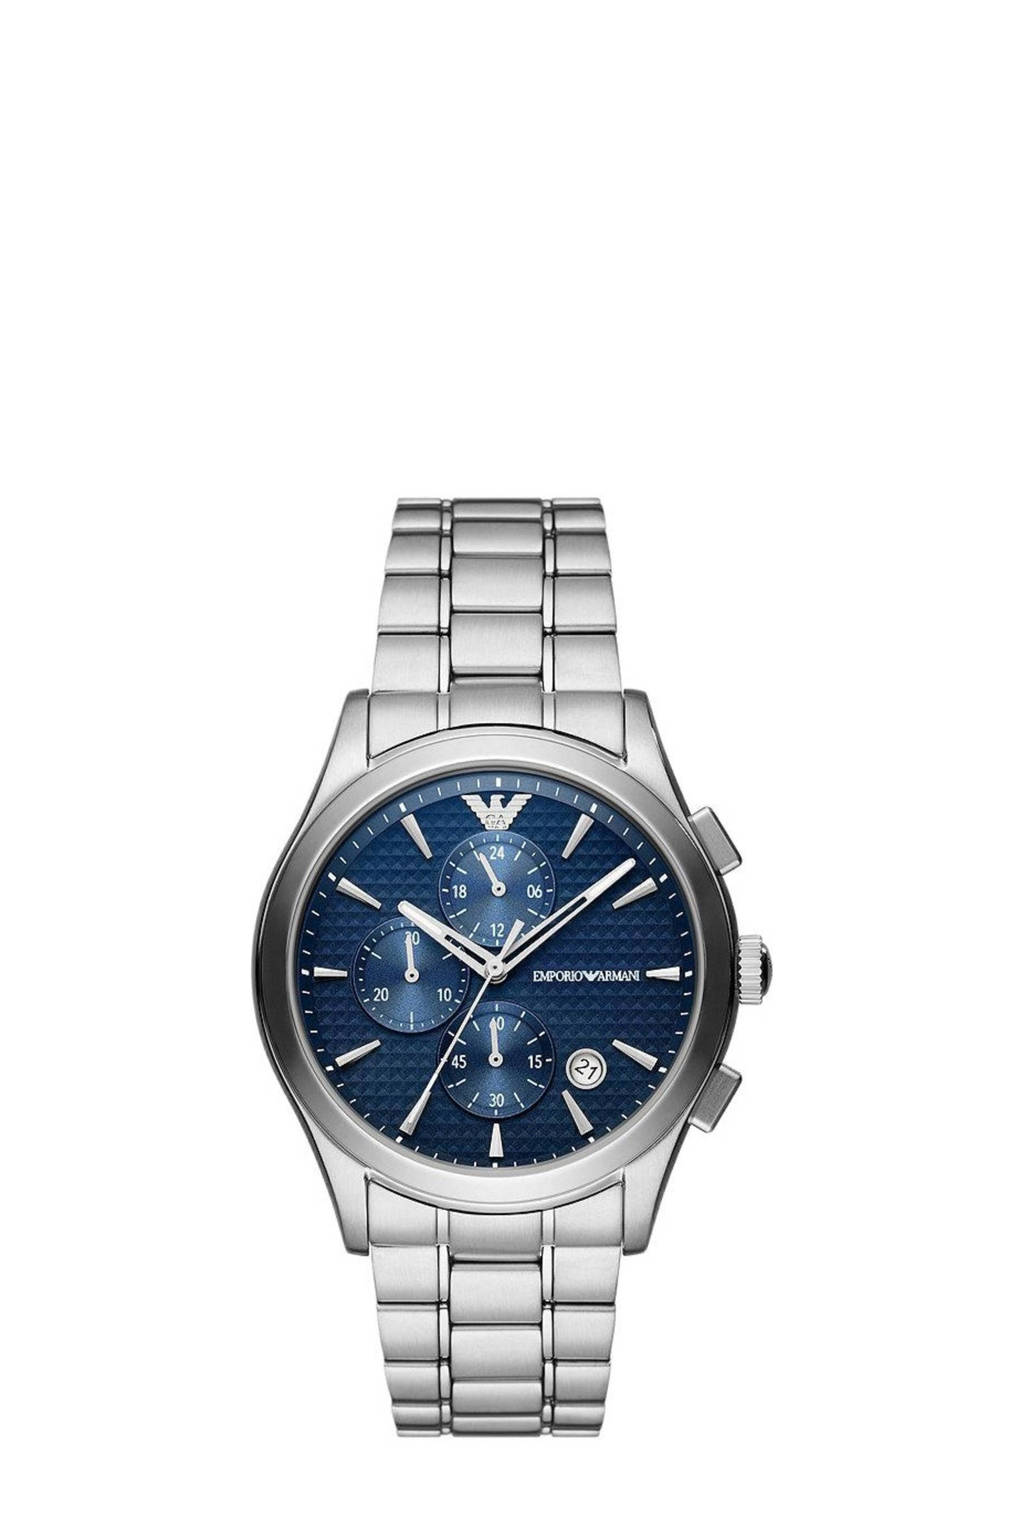 Emporio Emporio | zilverkleurig Armani wehkamp horloge Armani AR11528